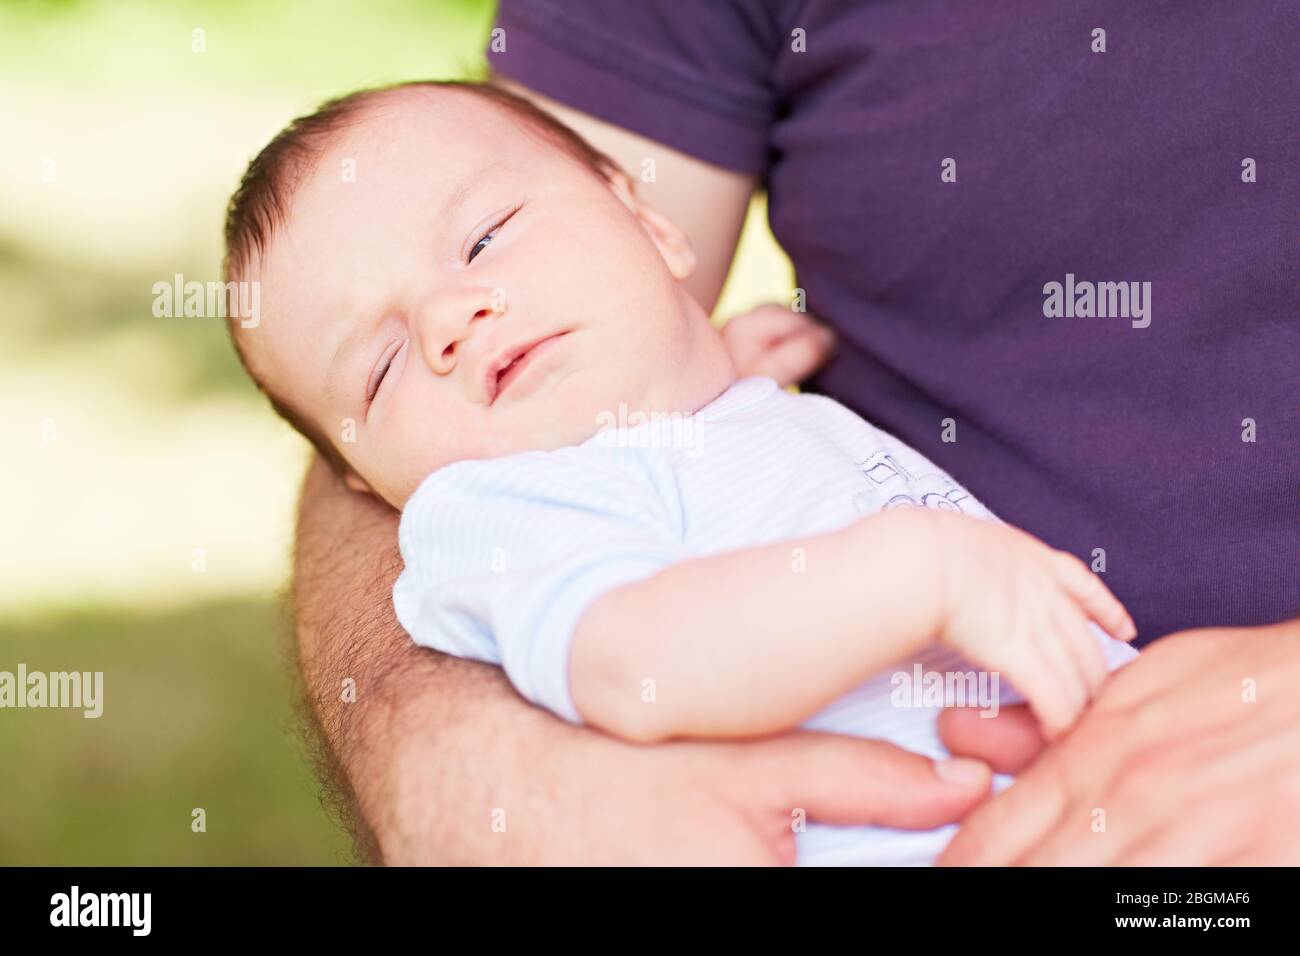 Vater hält ein kleines Baby auf seinem Arm Foto Stock